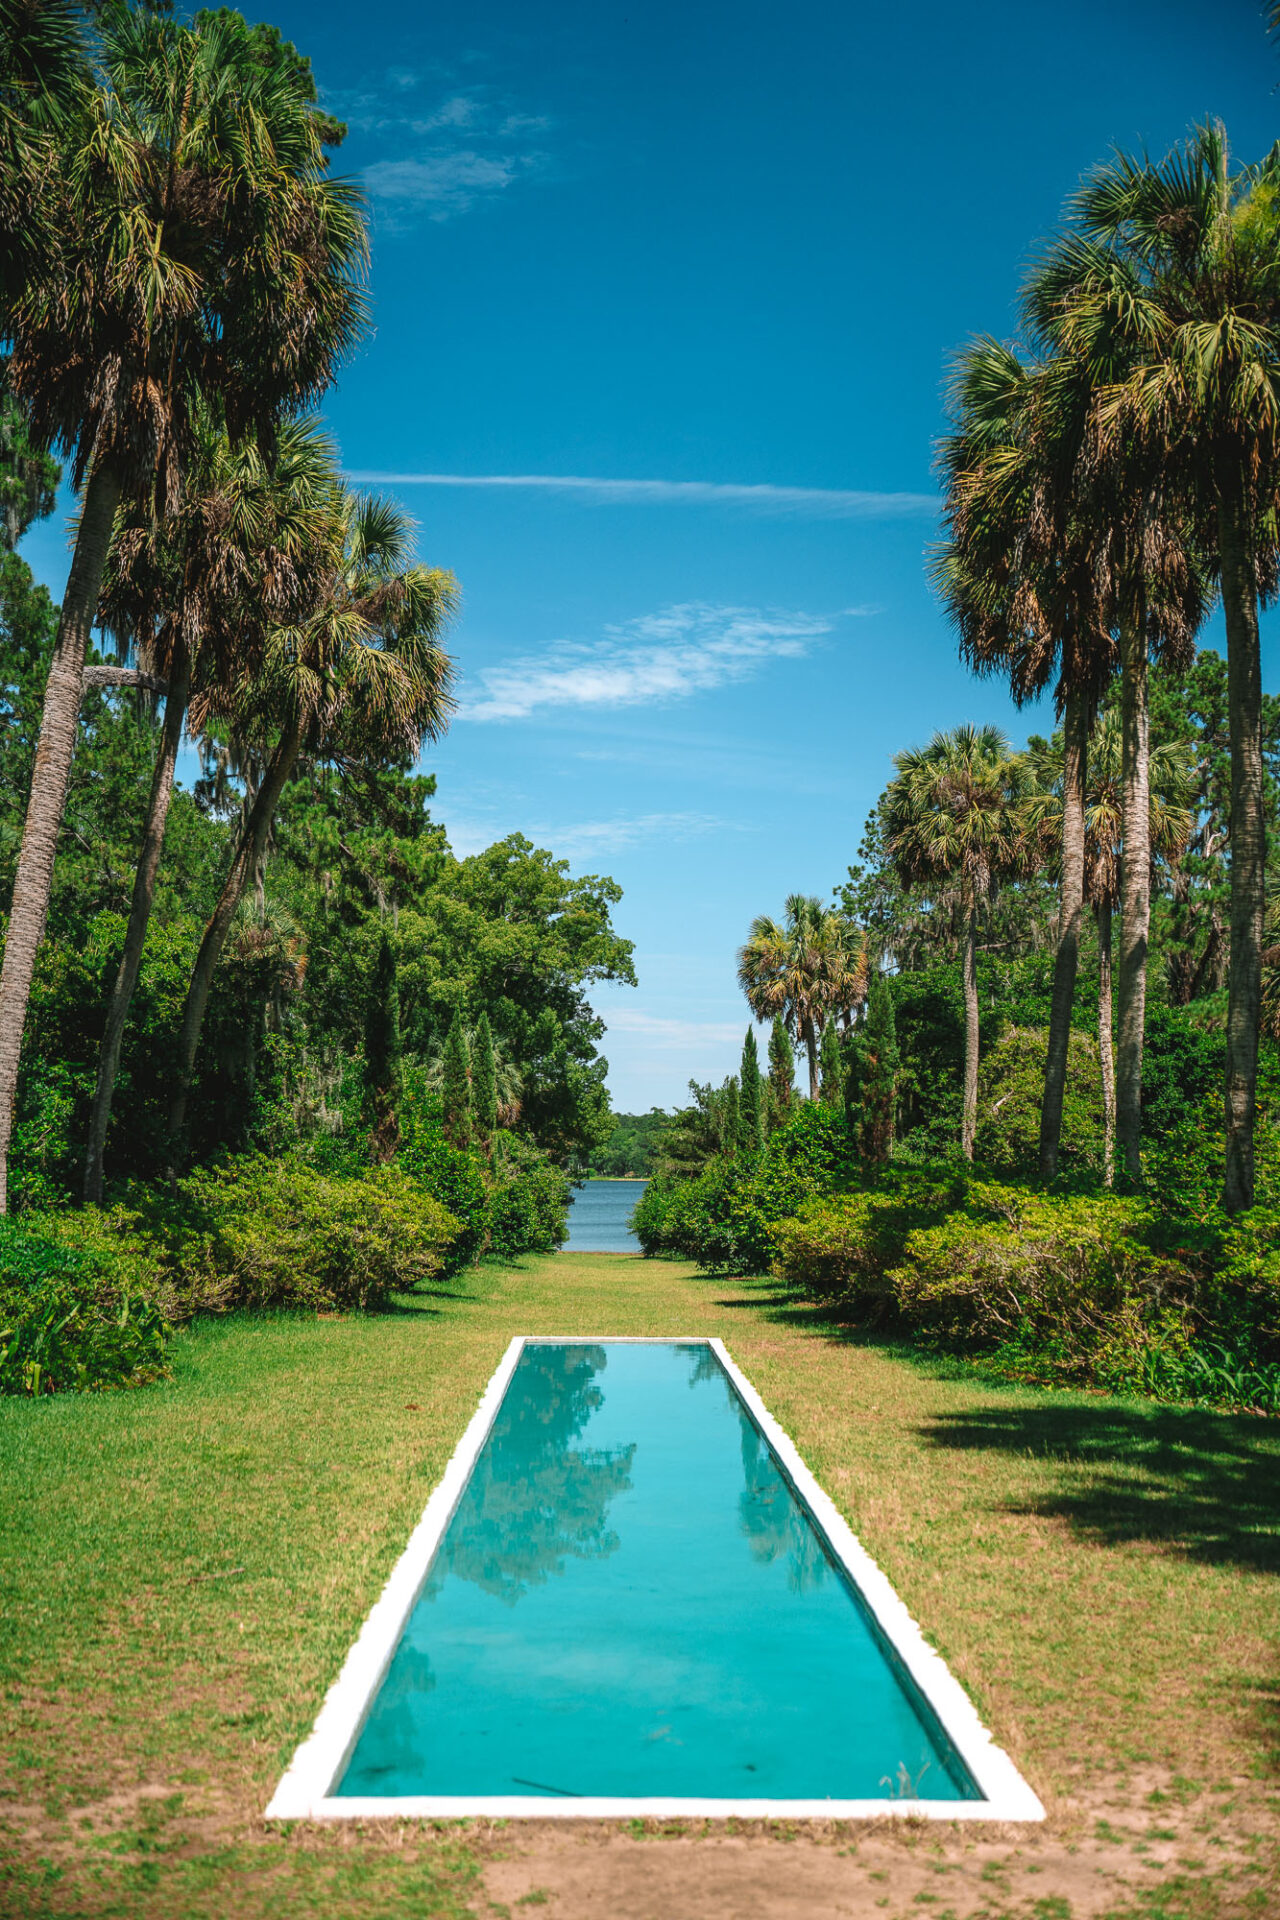 USA Florida Tallahassee Maclay Gardens 01457